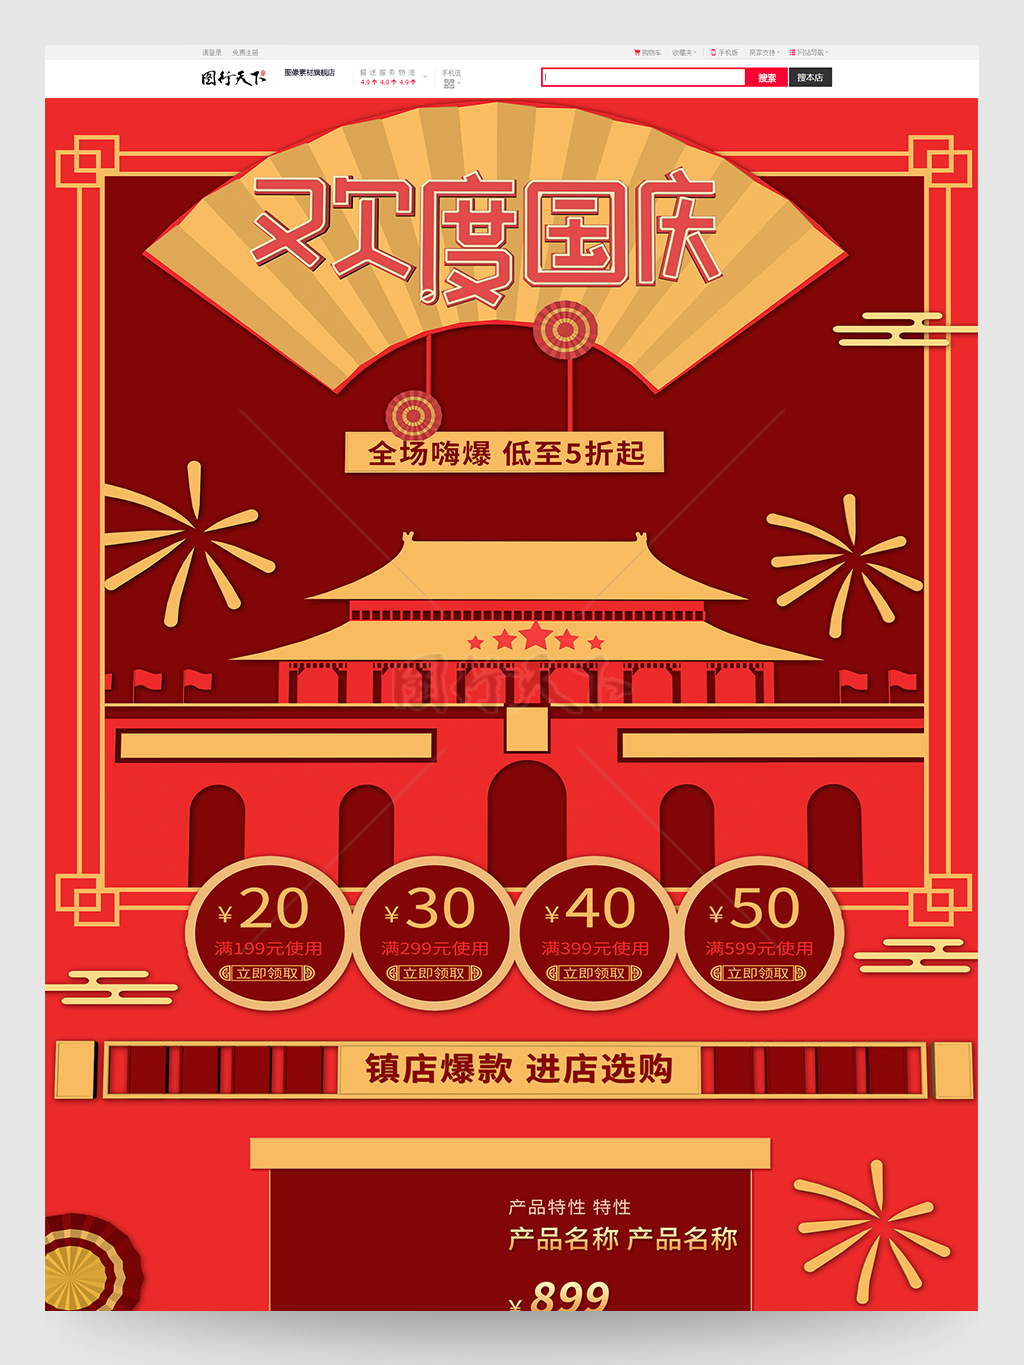 歡度國慶紅色中國風國慶節促銷電商首頁模板